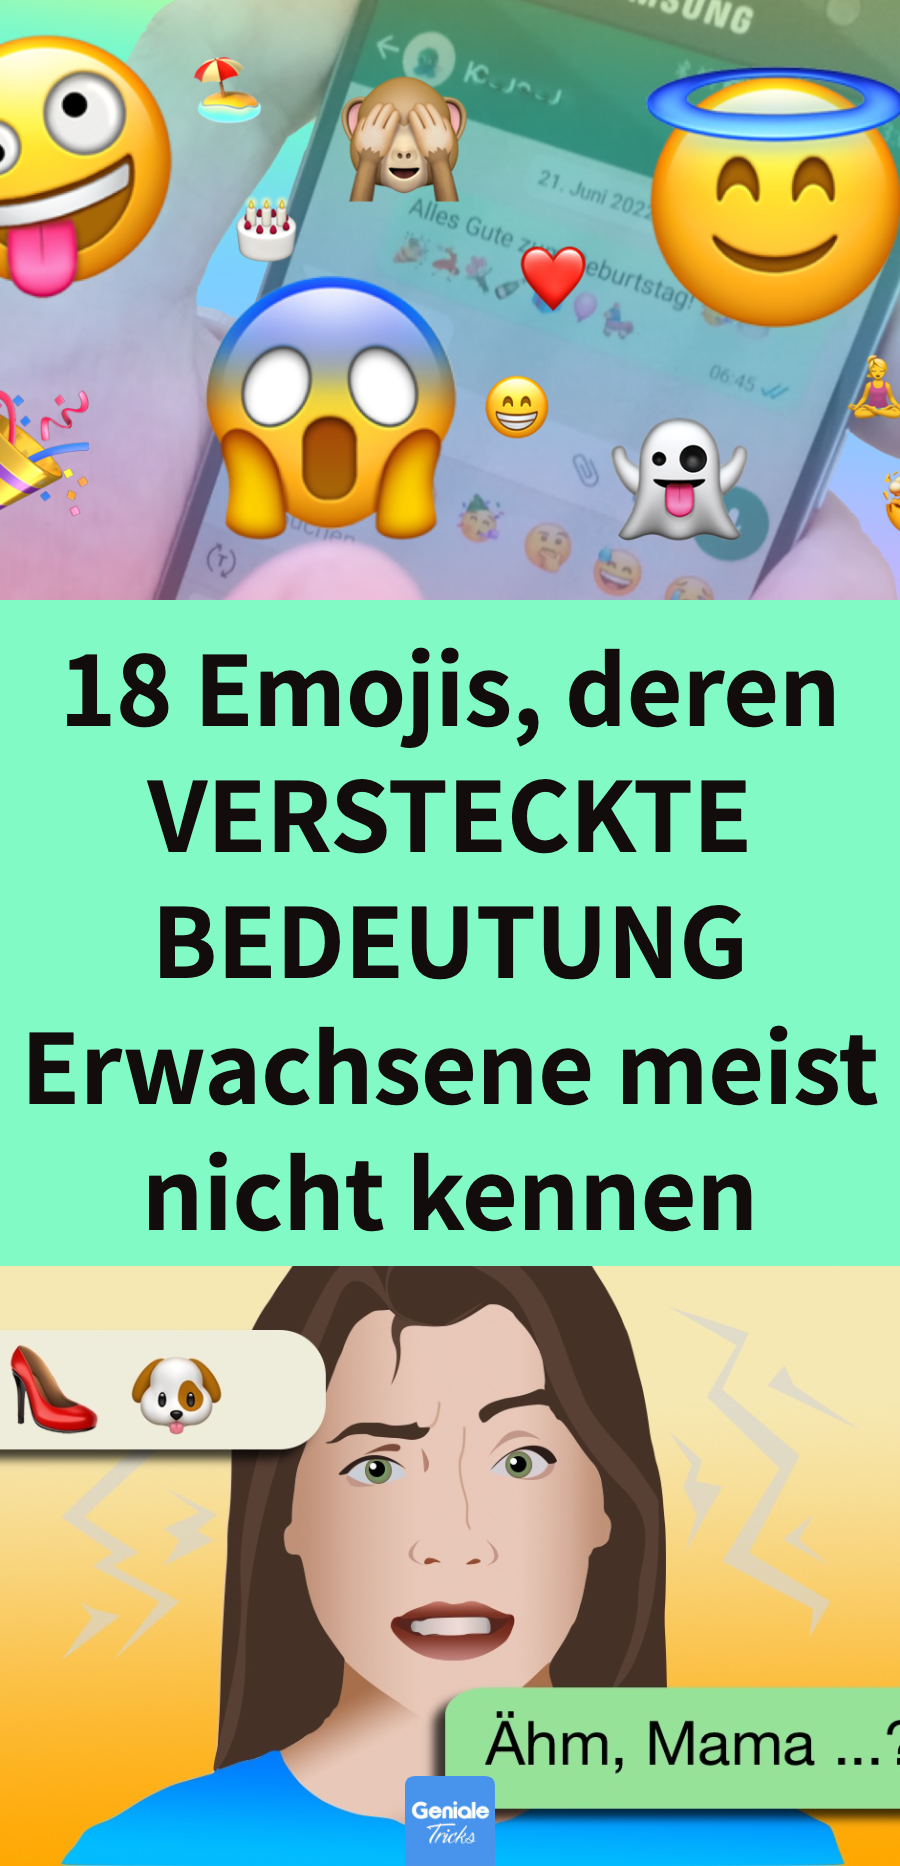 Kuriose Bedeutungen von Emojis